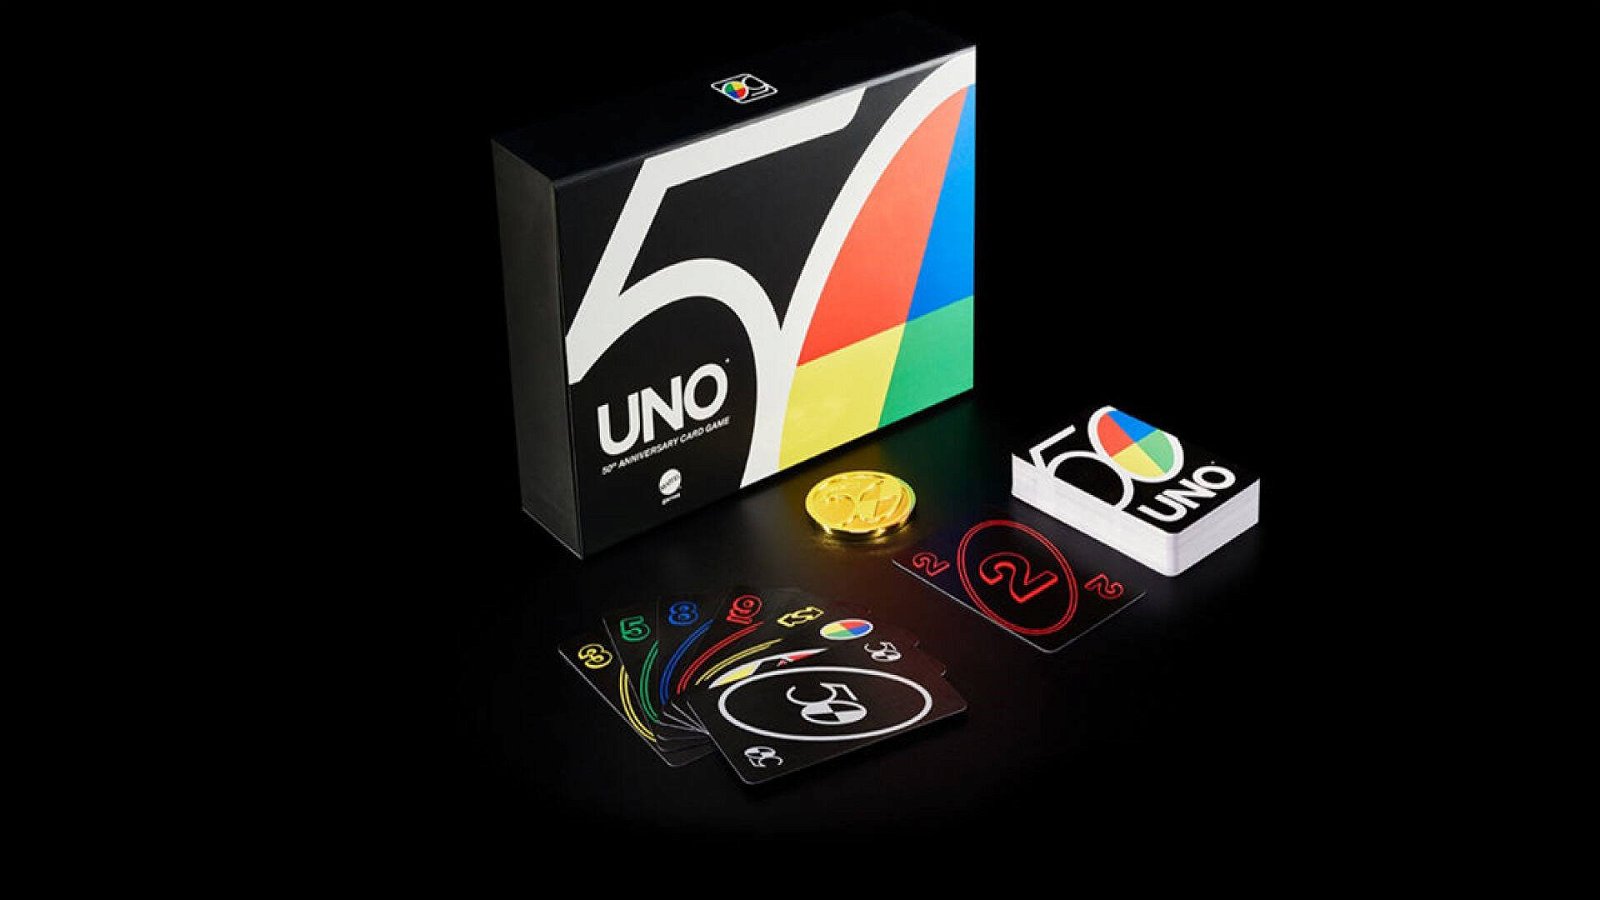 Immagine di UNO celebra i suoi 50 anni con nuovi prodotti e iniziative